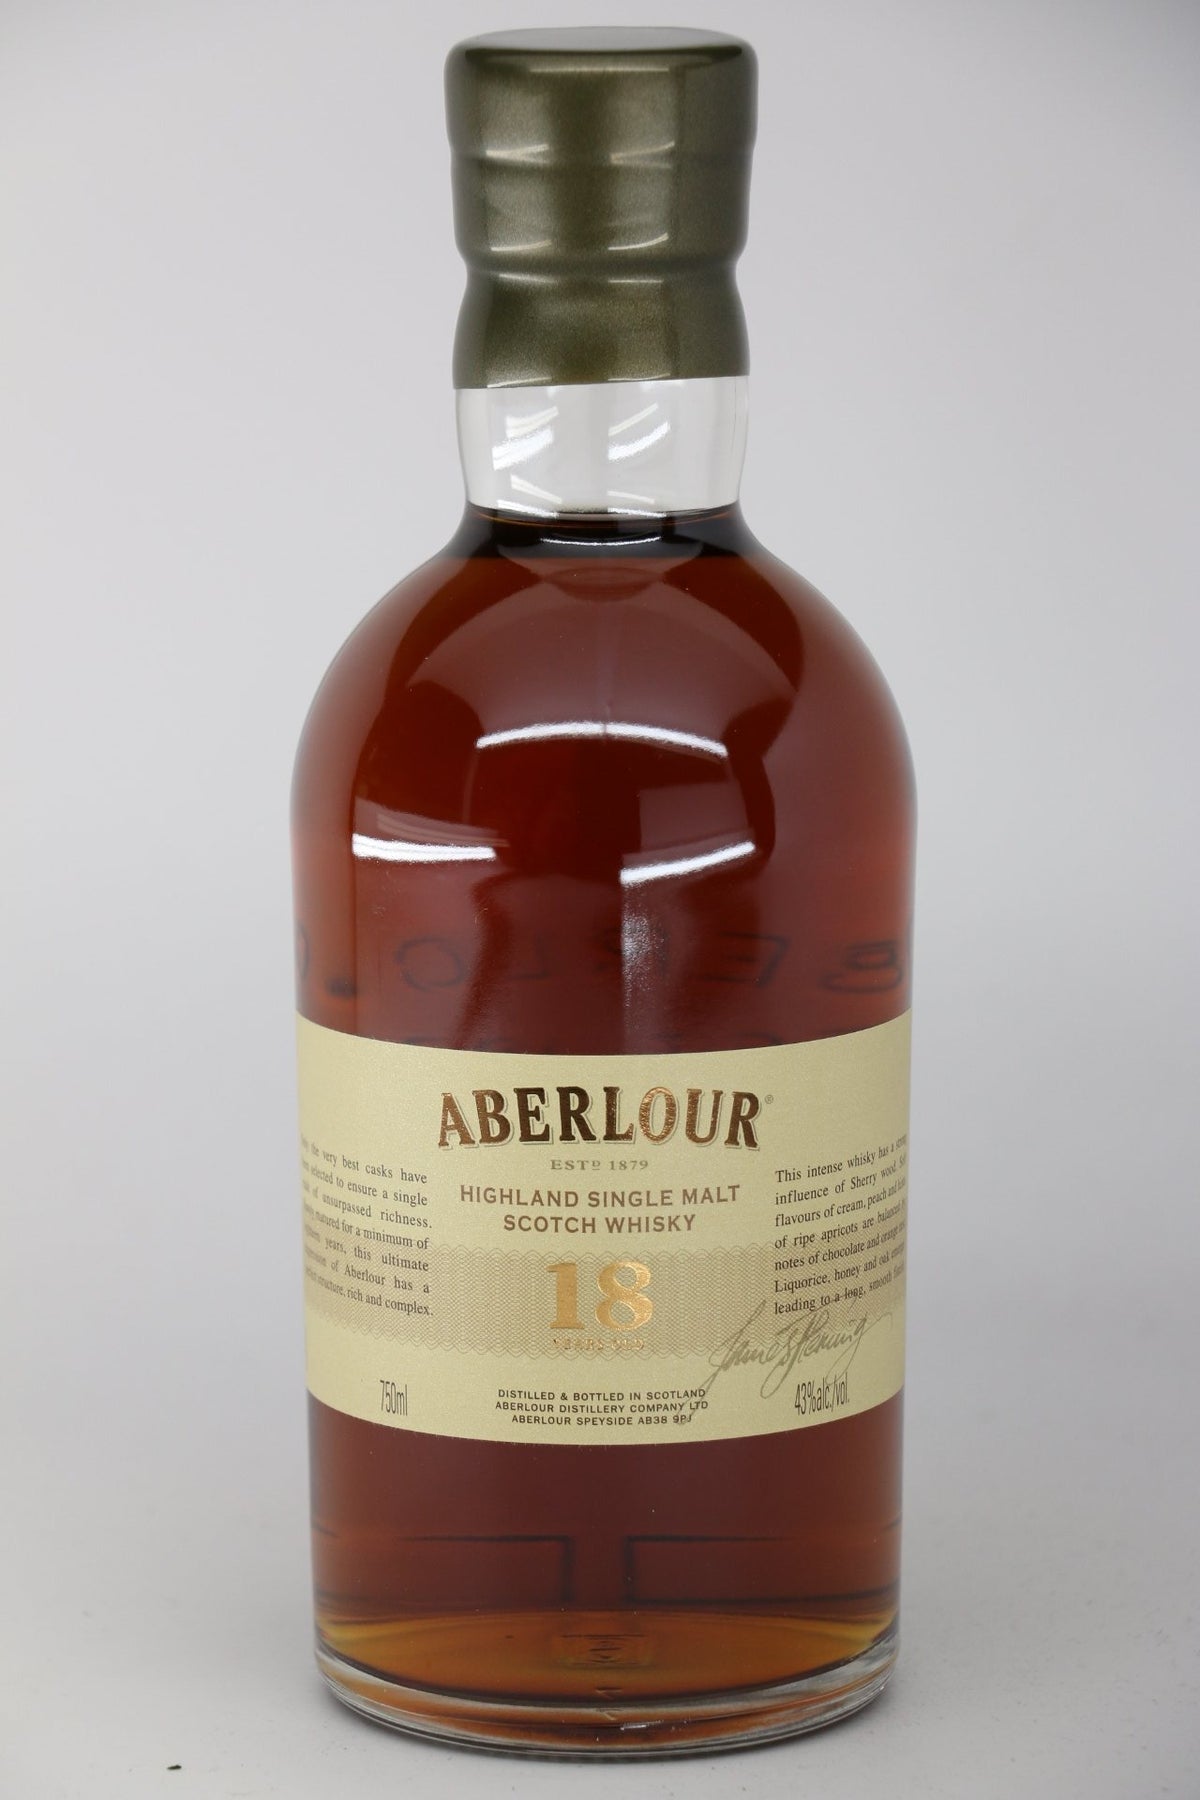 Aberlour 12 ans Double Cask Matured (2020) – Québec Whisky